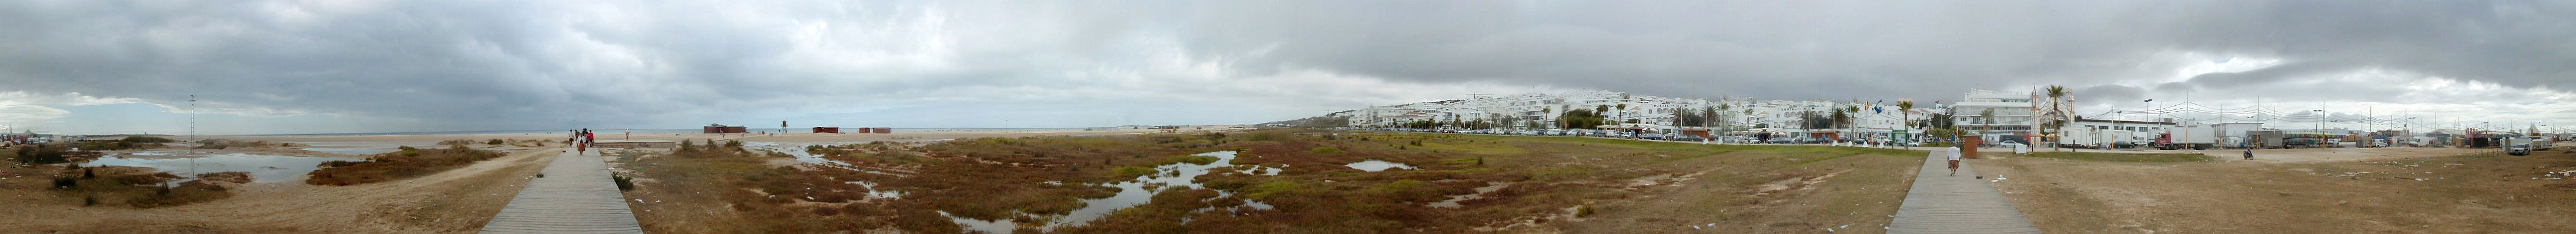 Panoramica di Conil de la Frontera e la sua spiaggia in un pomeriggio nuvoloso 